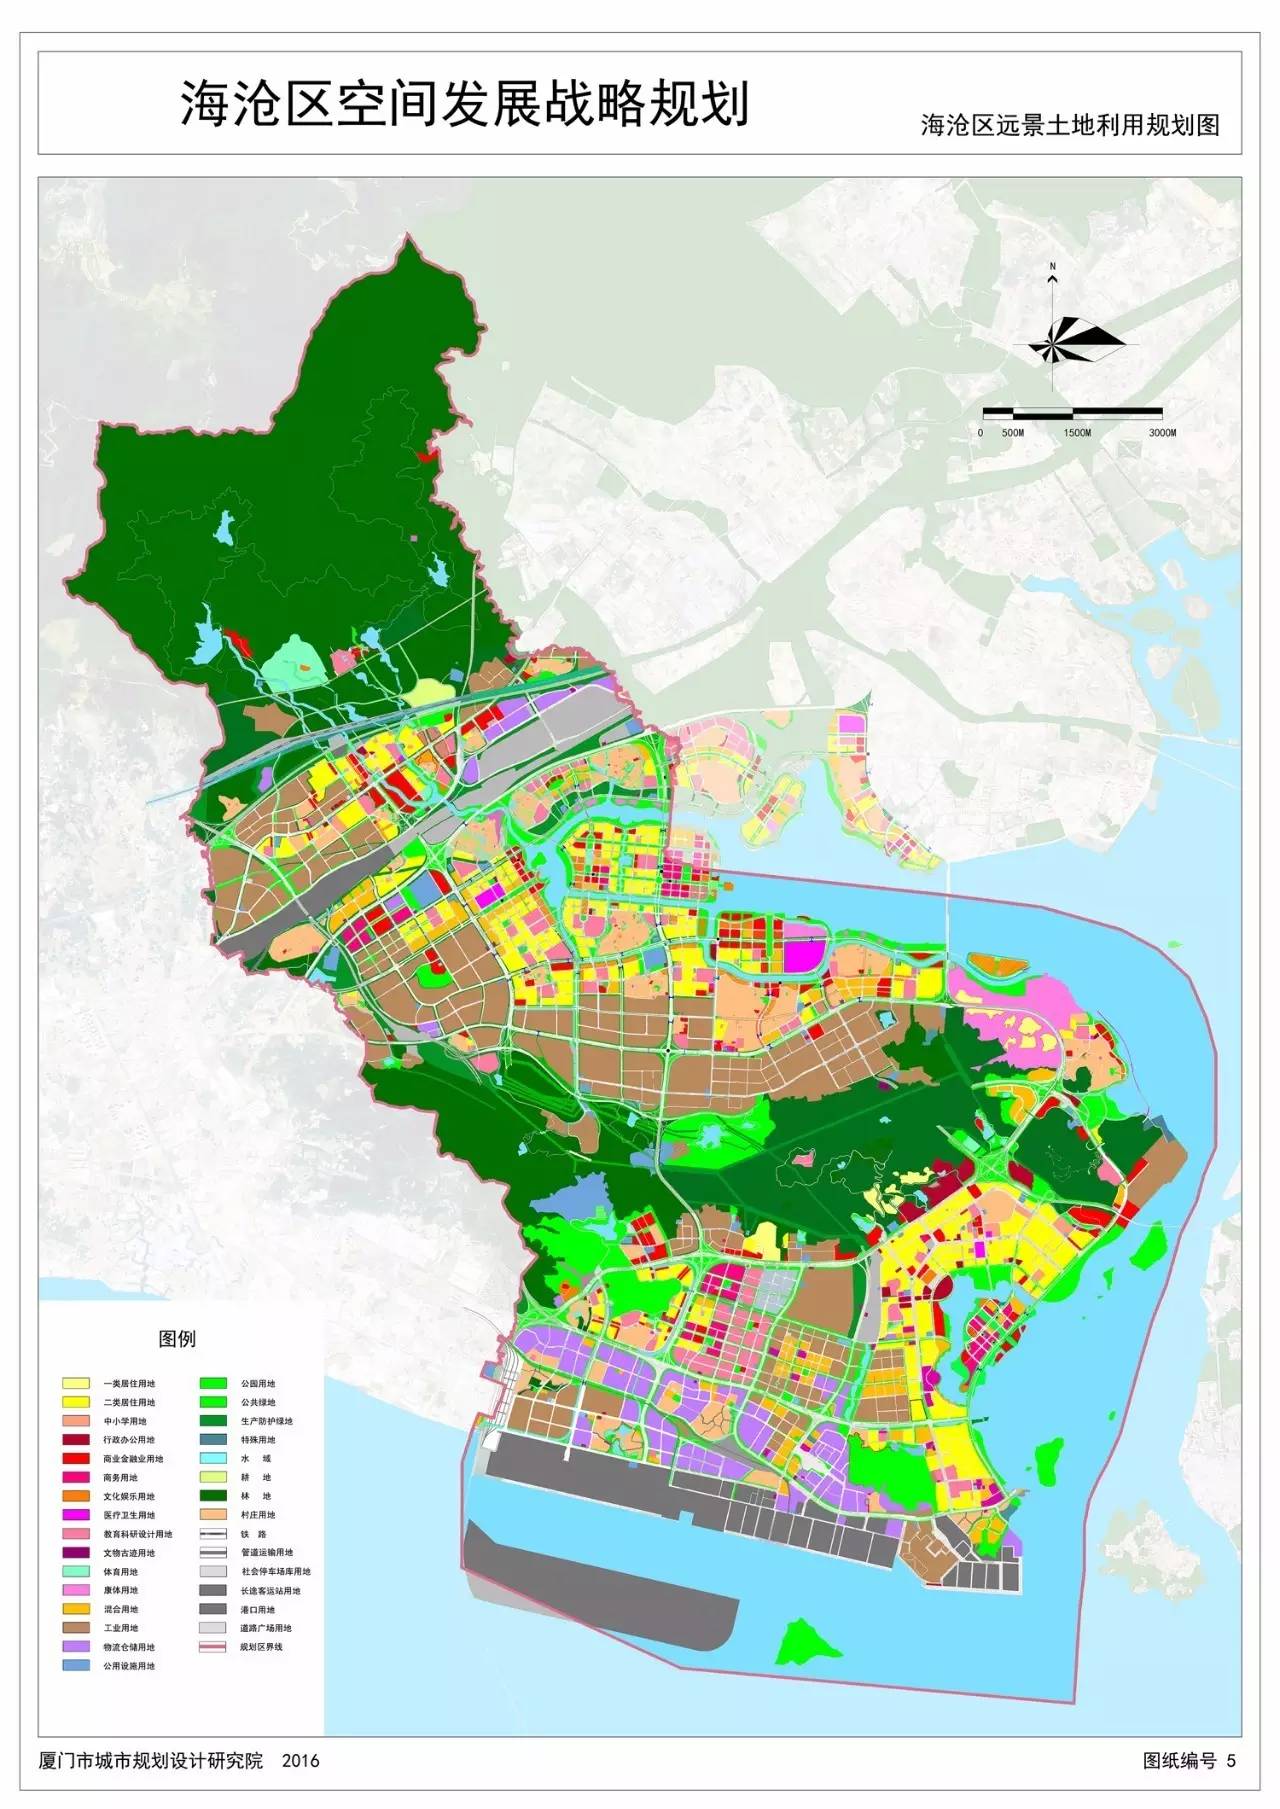 蓝图》《同安区空间发展战略规划》规划范围:厦门市同安区行政区范围